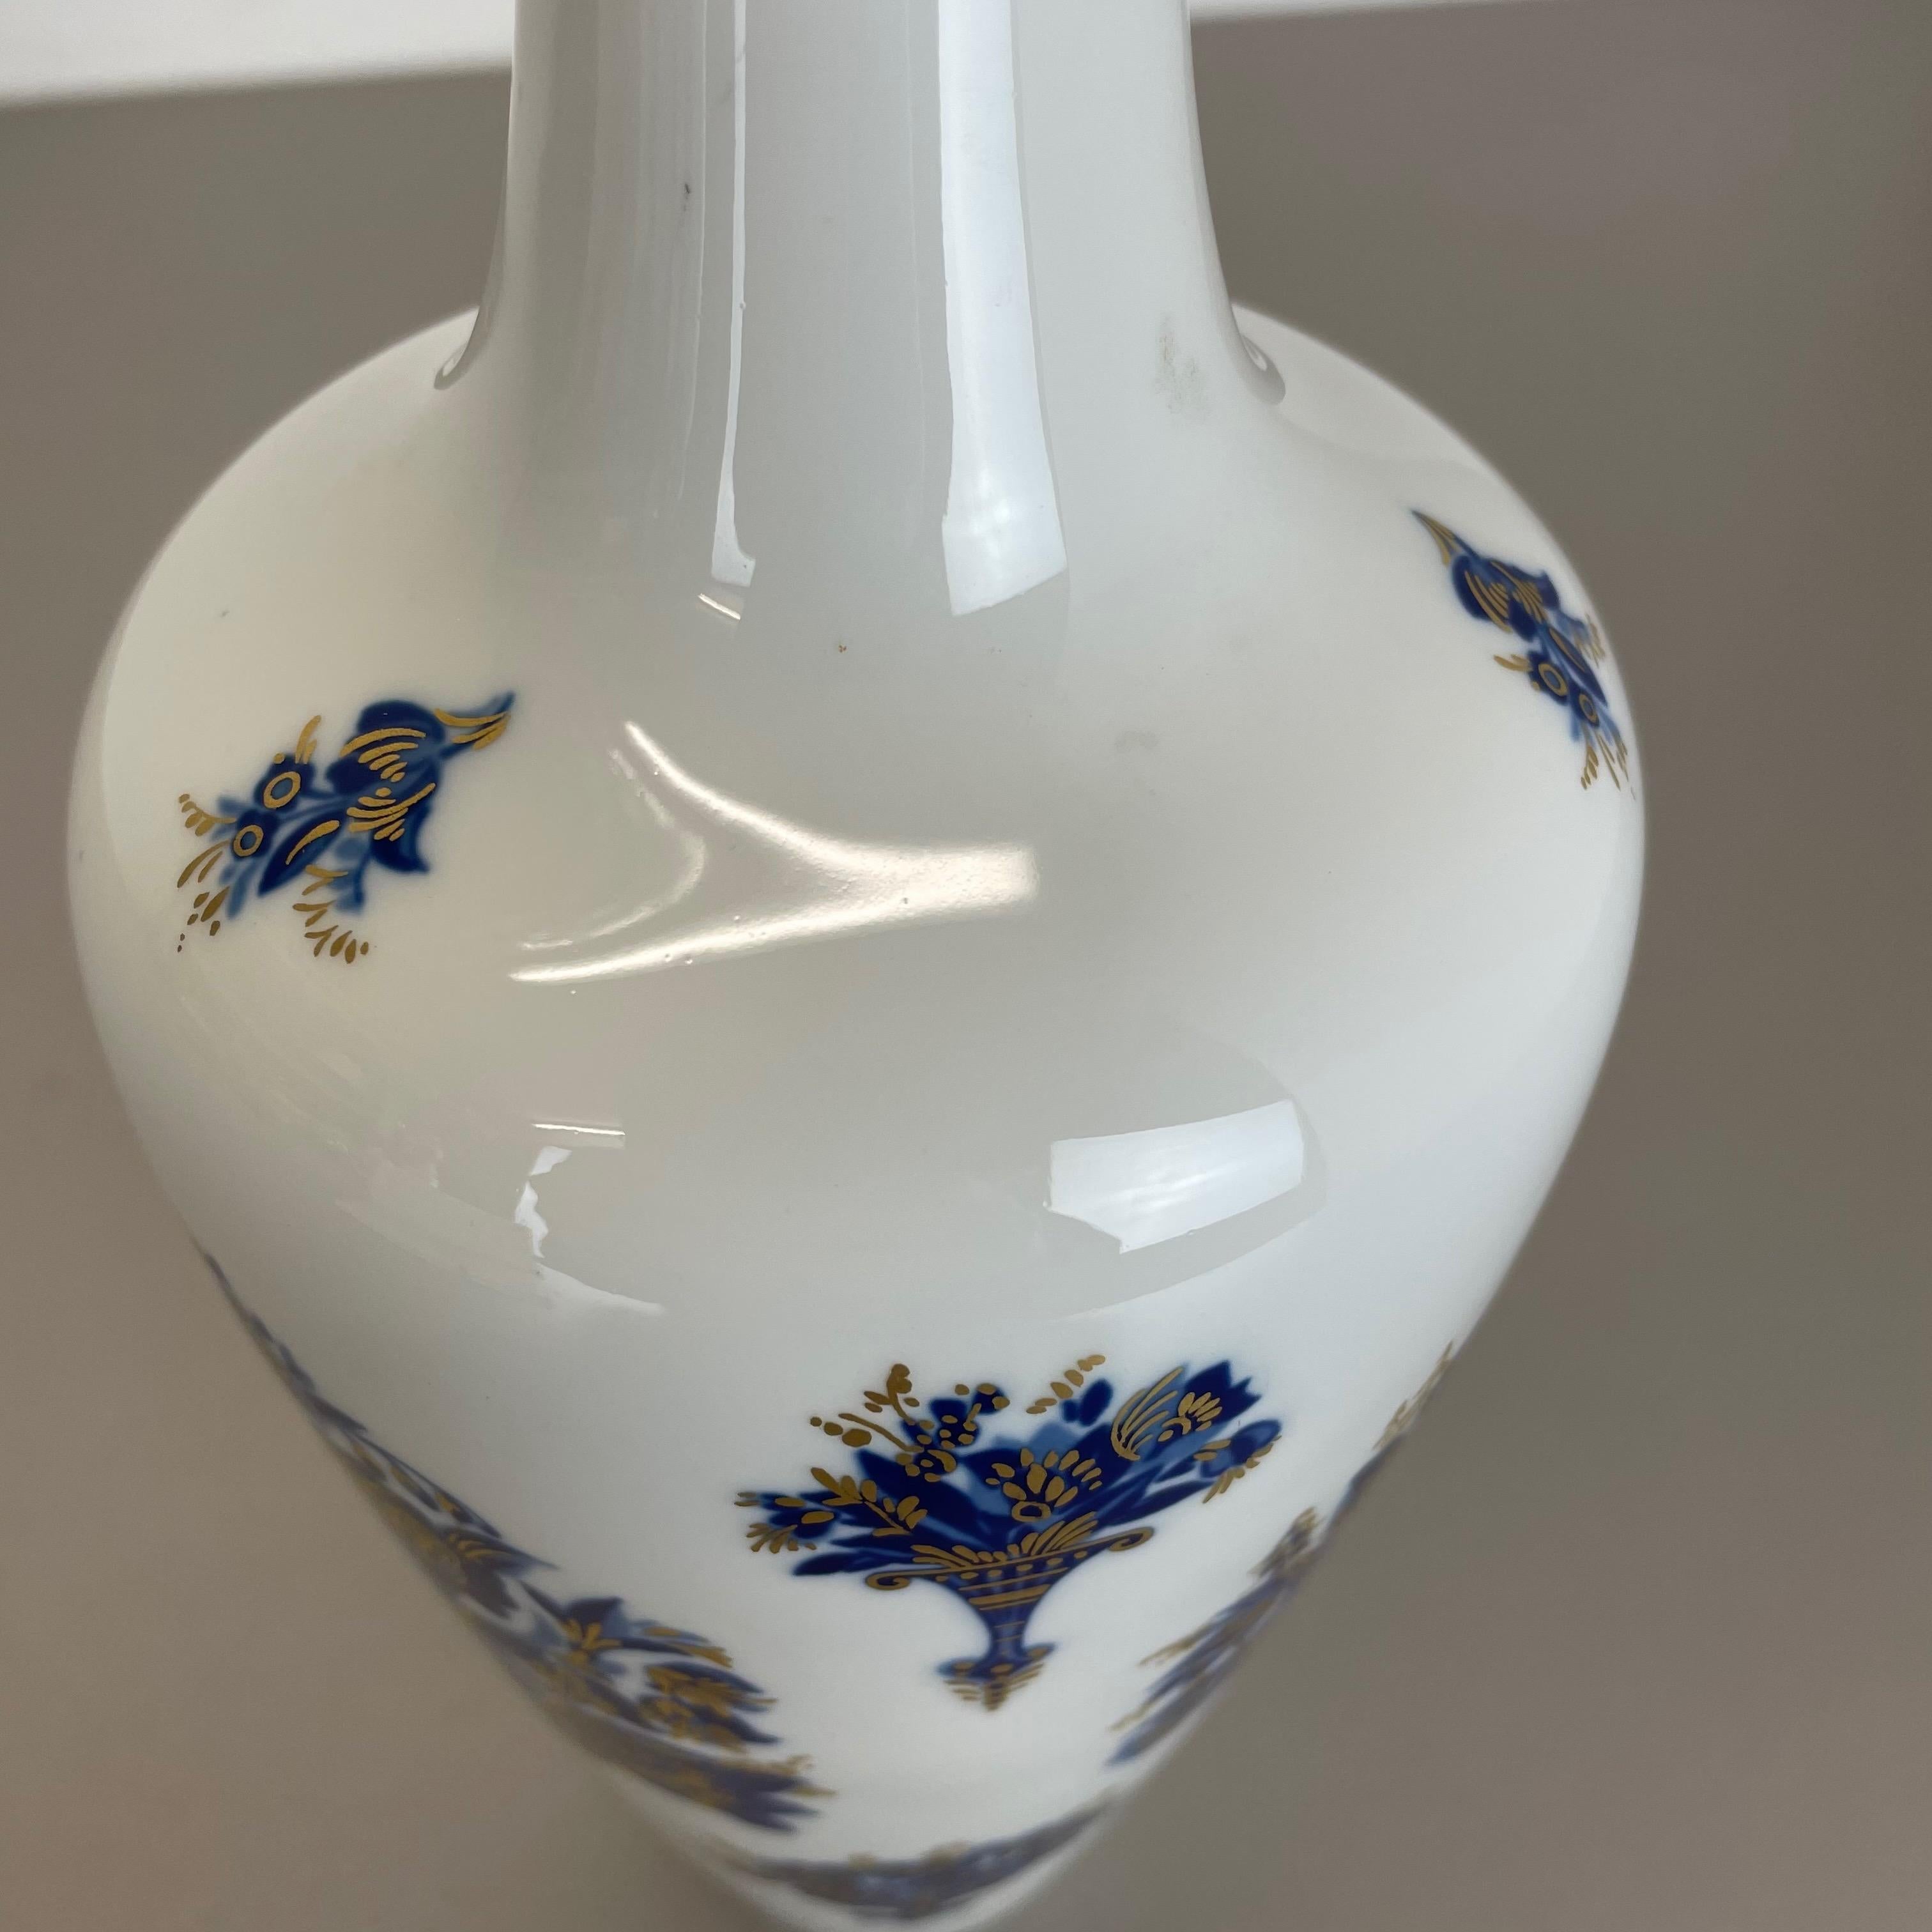 Original 1970s Op Art Vase Porcelain German Vase by Heinrich Ceramics, Germany For Sale 3